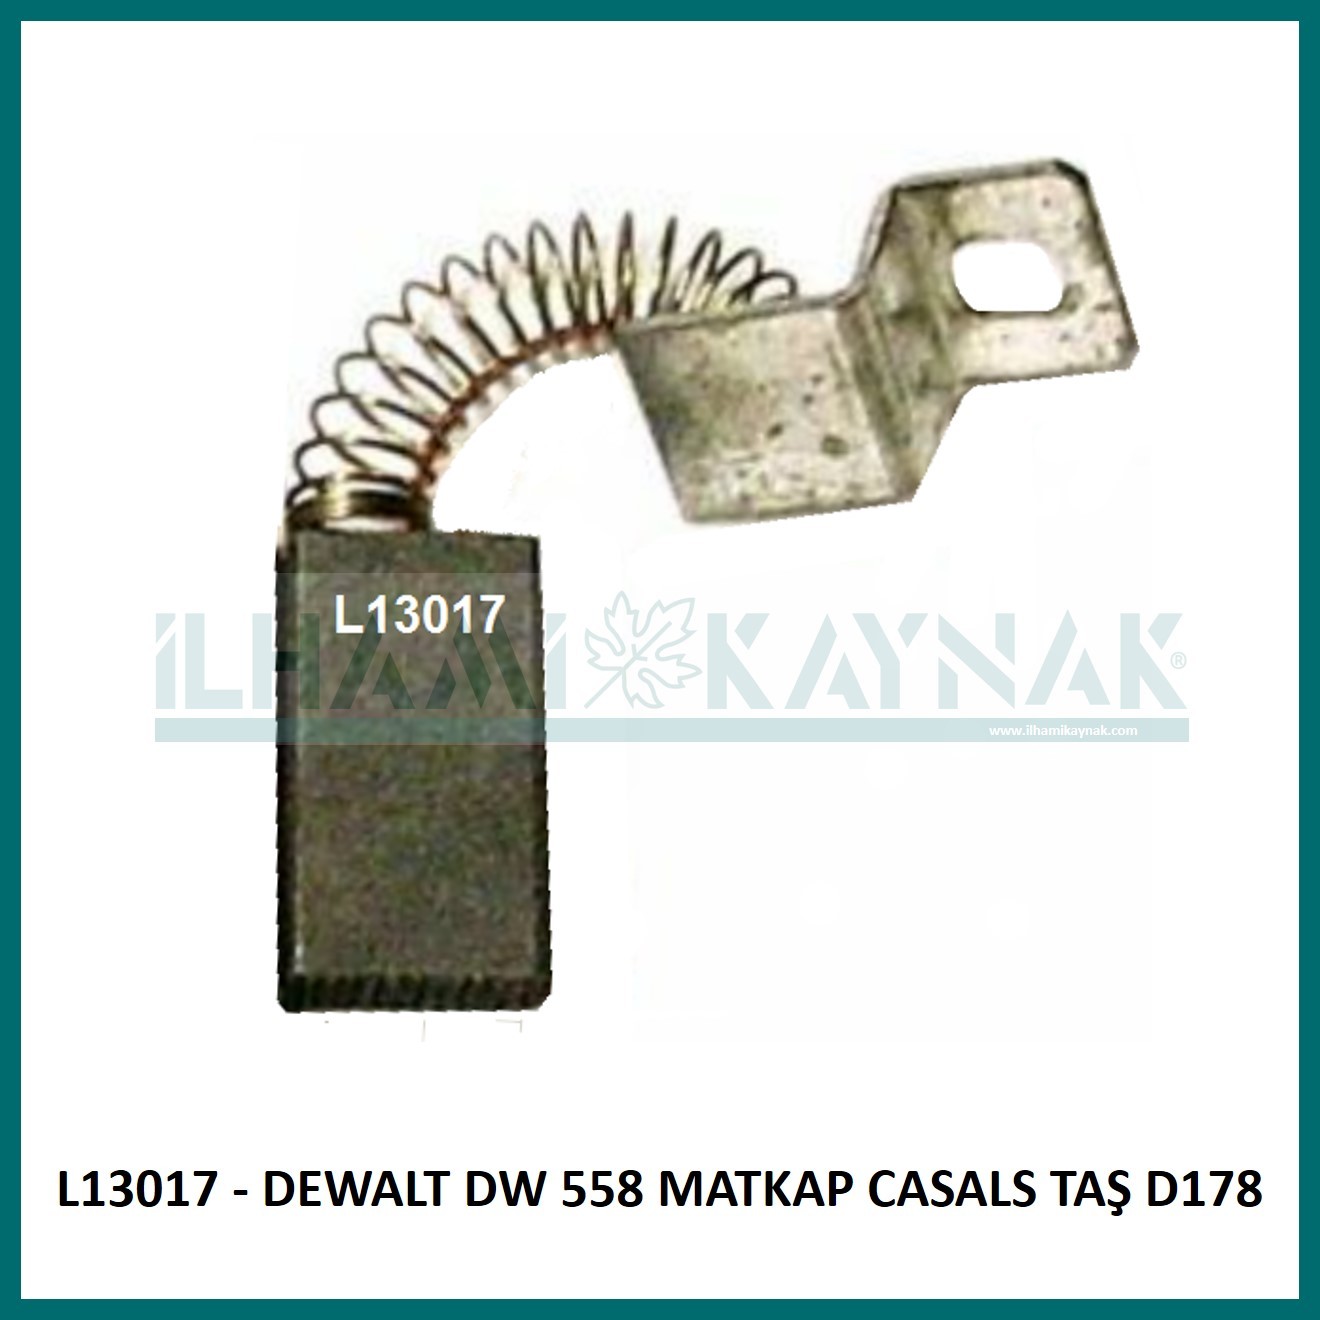 L13017 - DEWALT DW 558 MATKAP CASALS TAŞ D178 - 6,3*12,5*23 mm - 50 Adet